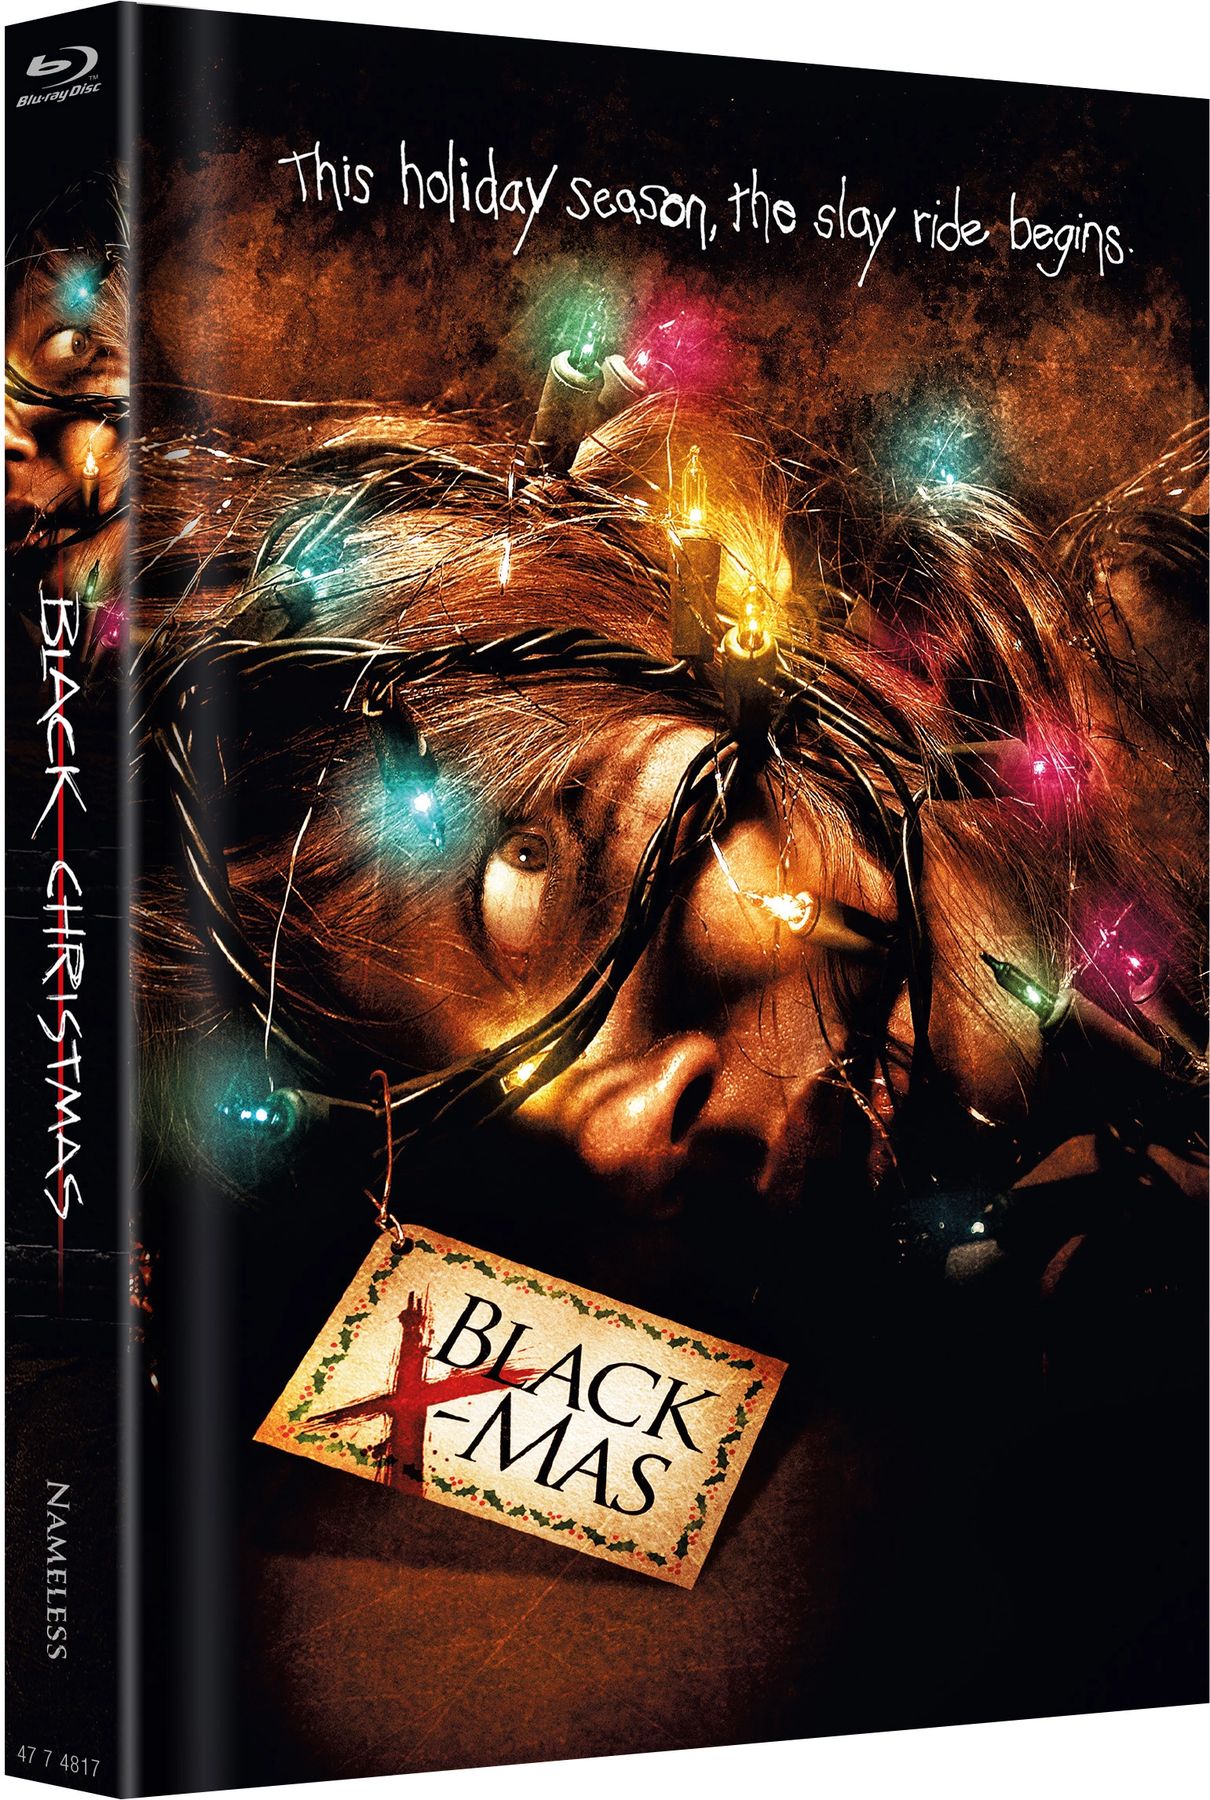 Black Christmas (Blu-ray Mediabook) (Media Markt Exclusive) [Germany]